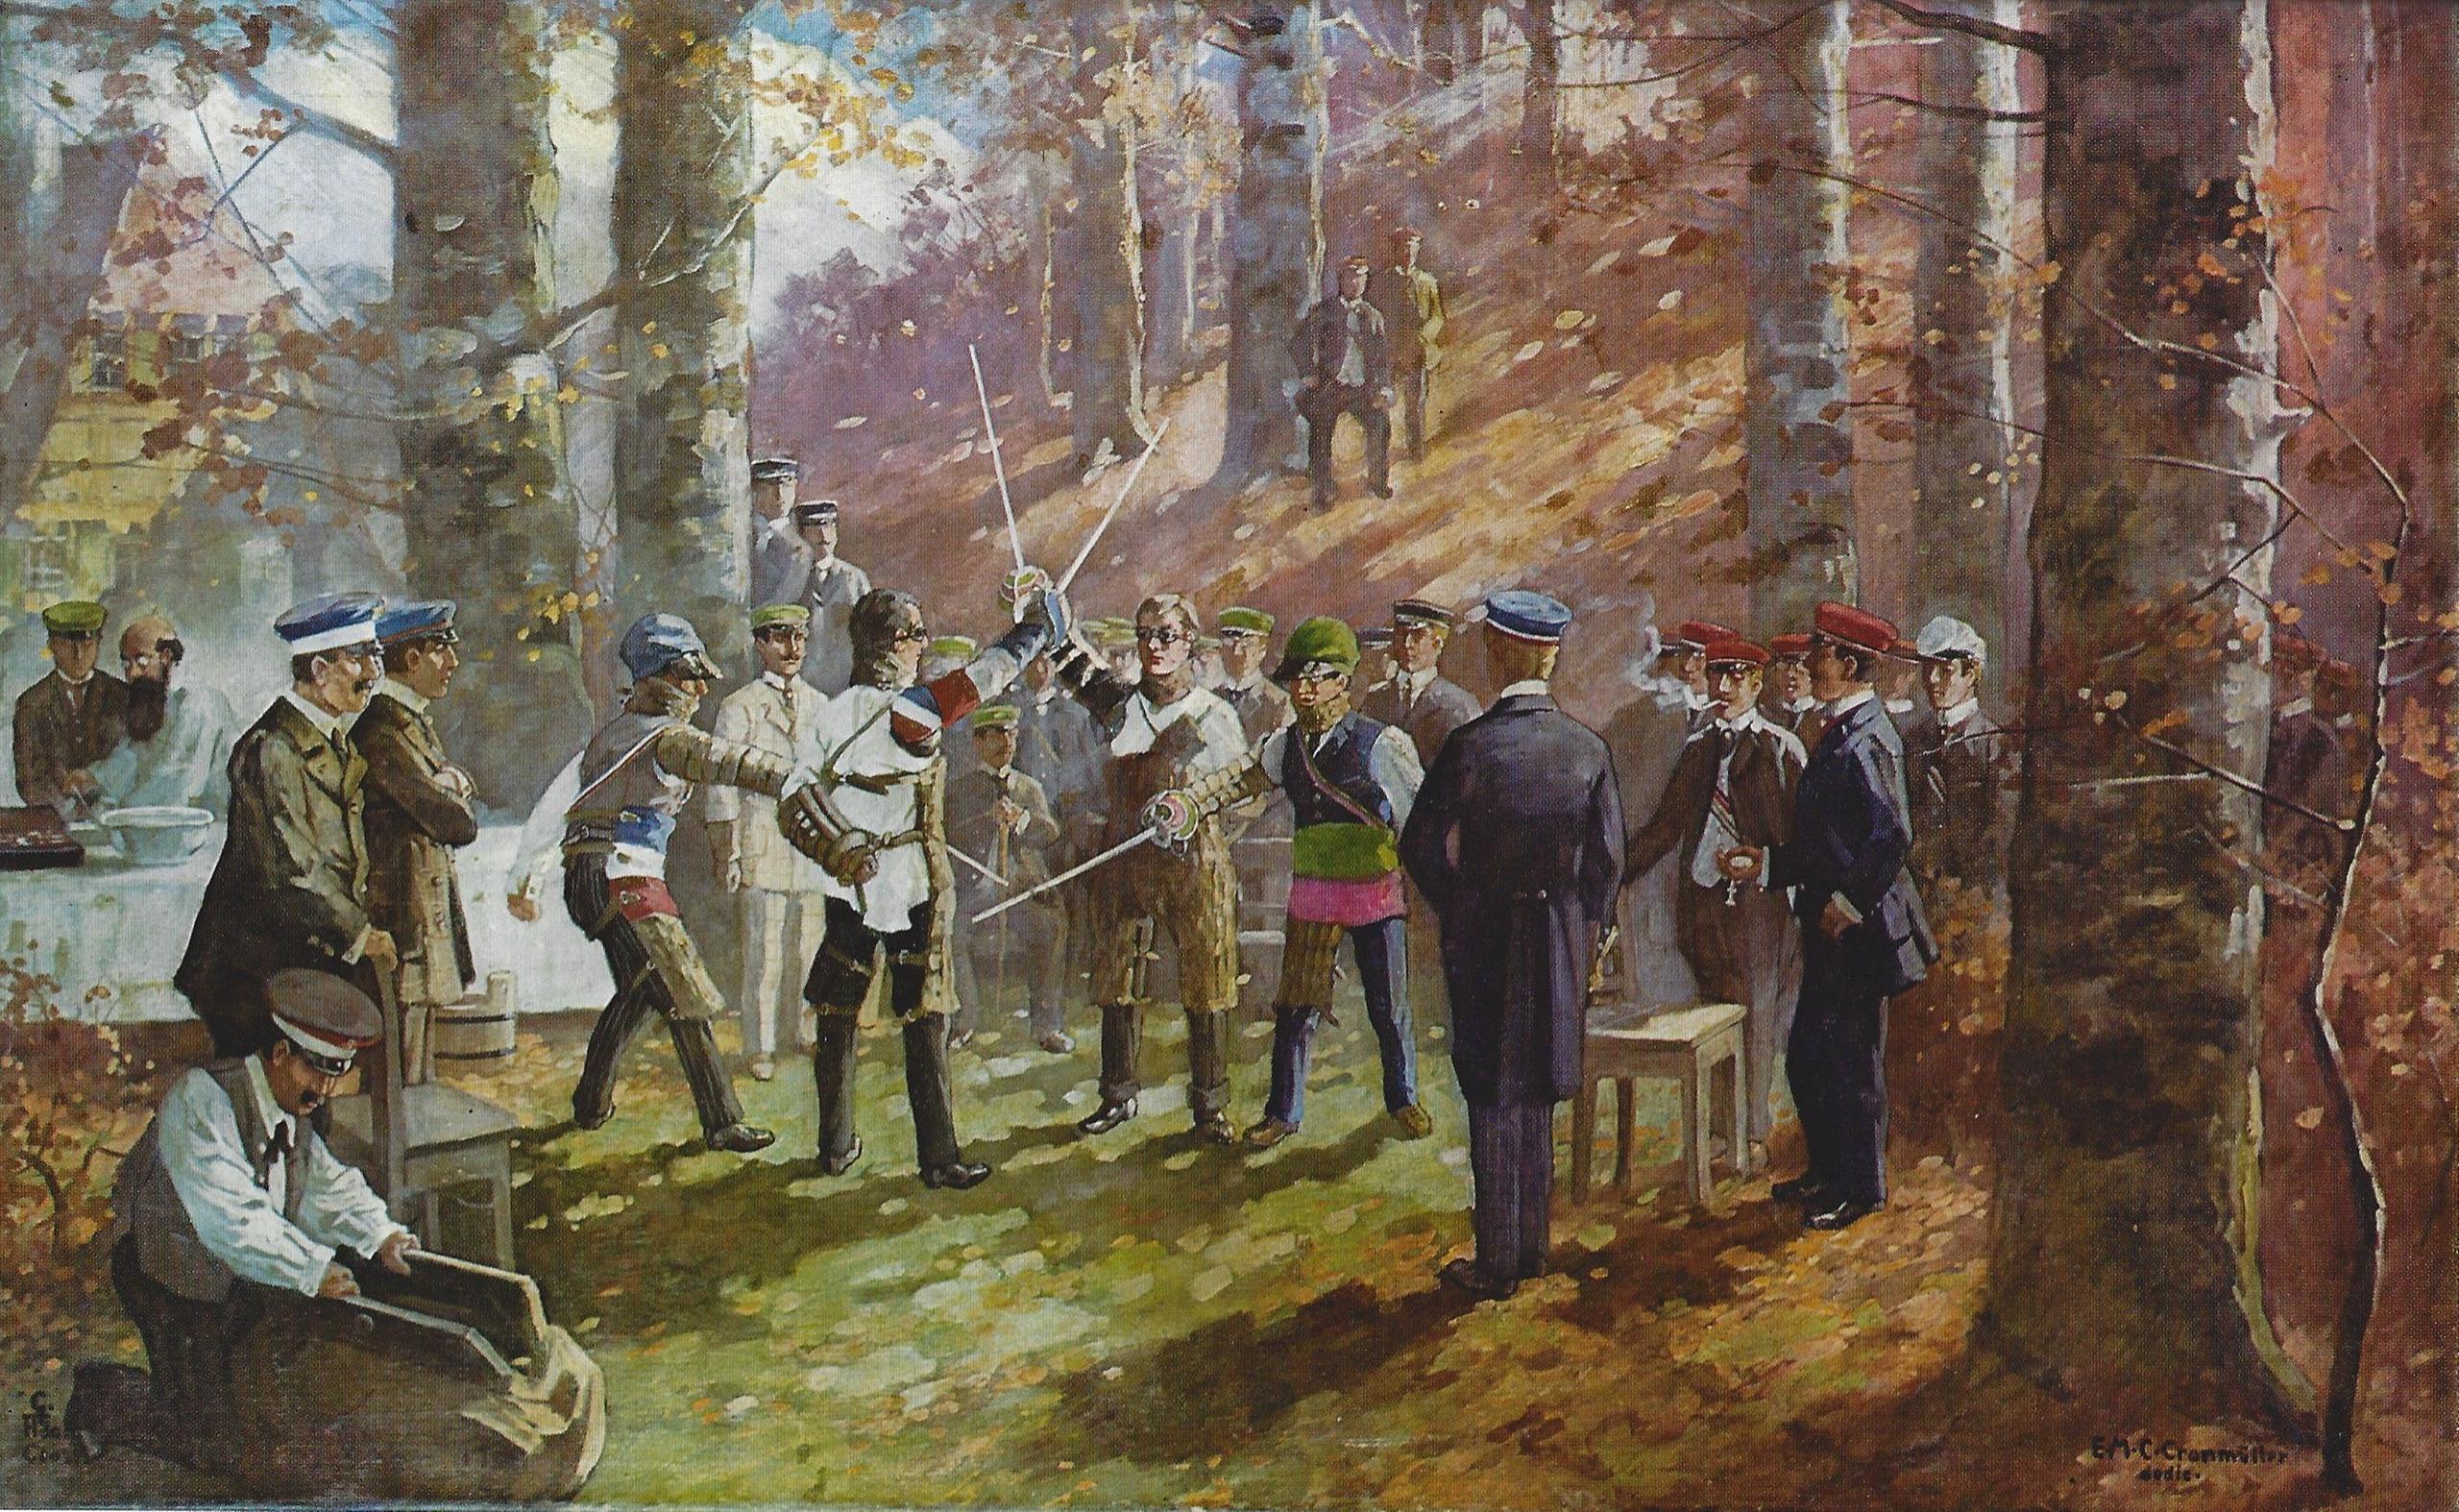 Картина «Мензурная дуэль в лесу» кисти художника Густава Адольфа Клосса (1890 г.)